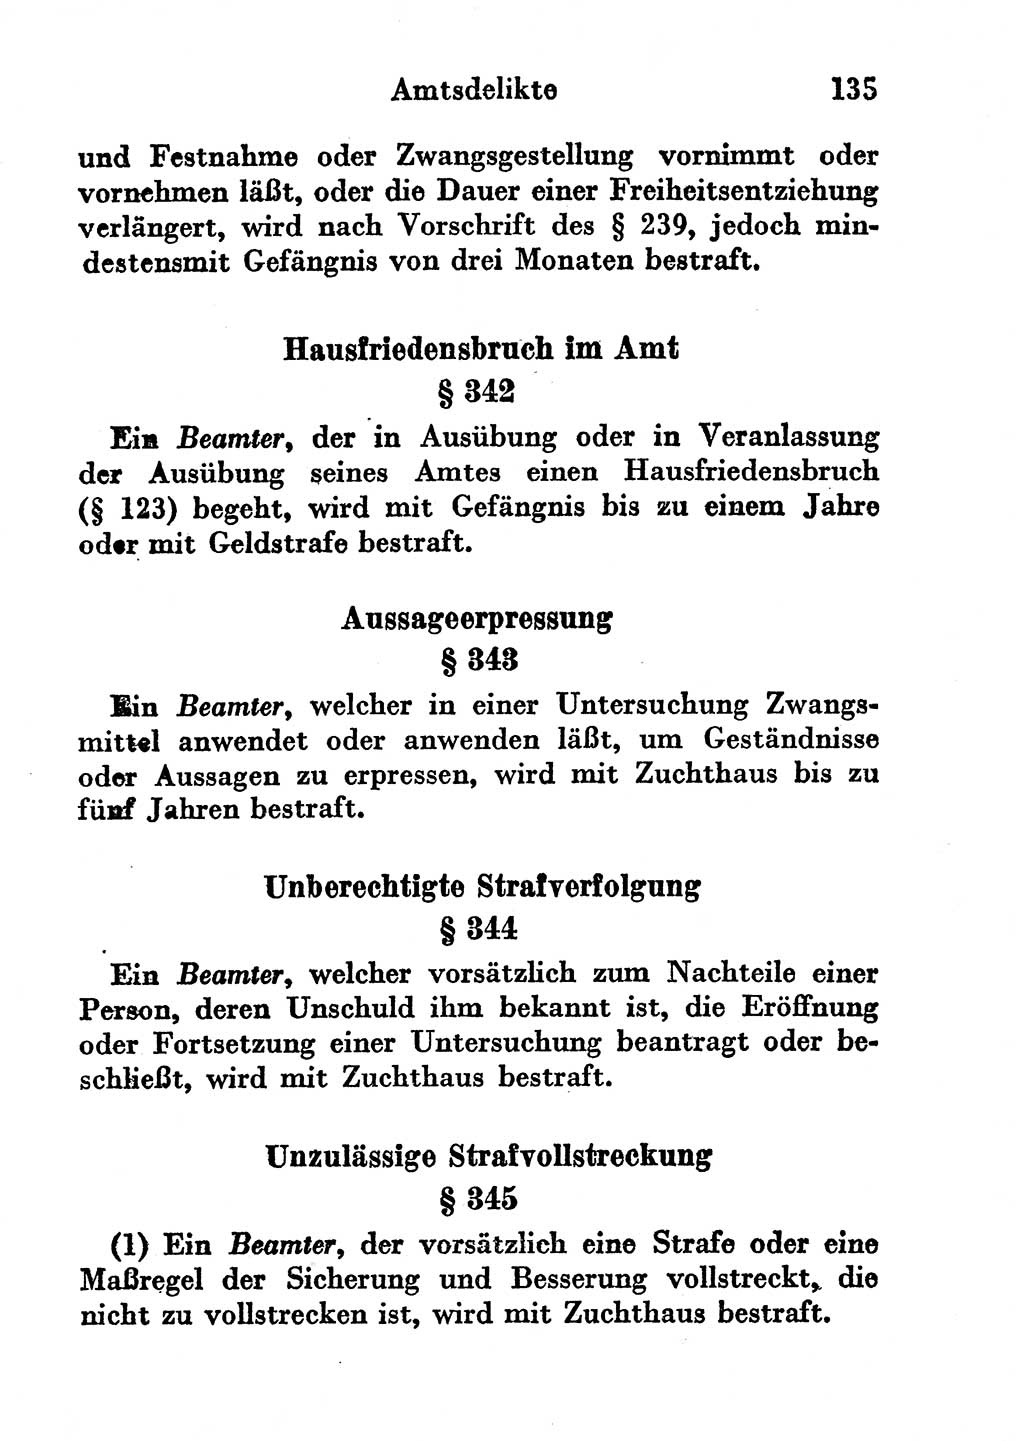 Strafgesetzbuch (StGB) und andere Strafgesetze [Deutsche Demokratische Republik (DDR)] 1956, Seite 135 (StGB Strafges. DDR 1956, S. 135)